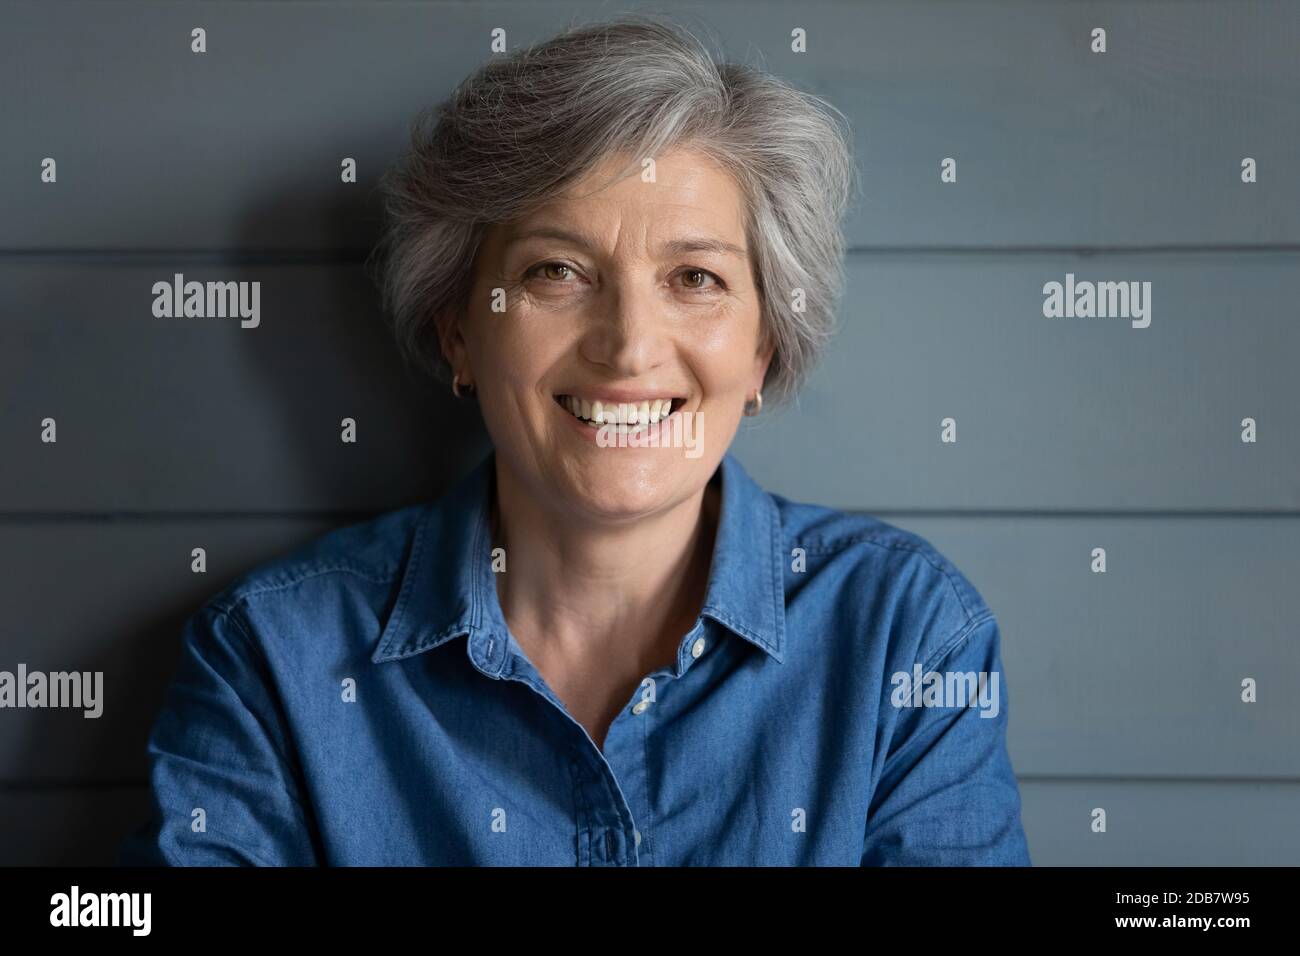 Kopfaufnahme Porträt lächelnd grauhaarige Frau Blick auf die Kamera Stockfoto